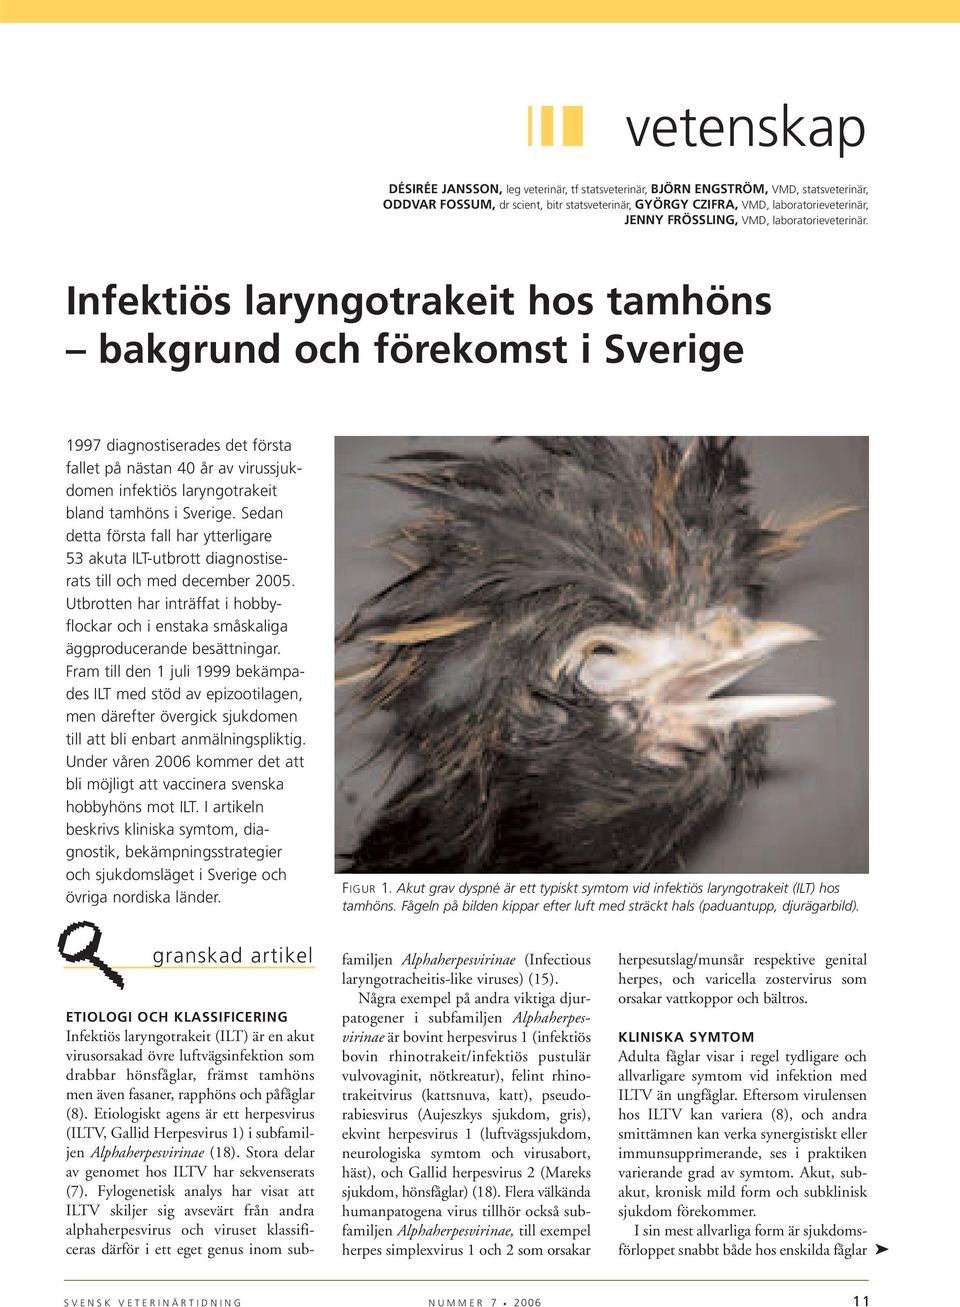 Infektiös laryngotrakeit hos tamhöns bakgrund och förekomst i Sverige 1997 diagnostiserades det första fallet på nästan 40 år av virussjukdomen infektiös laryngotrakeit bland tamhöns i Sverige.